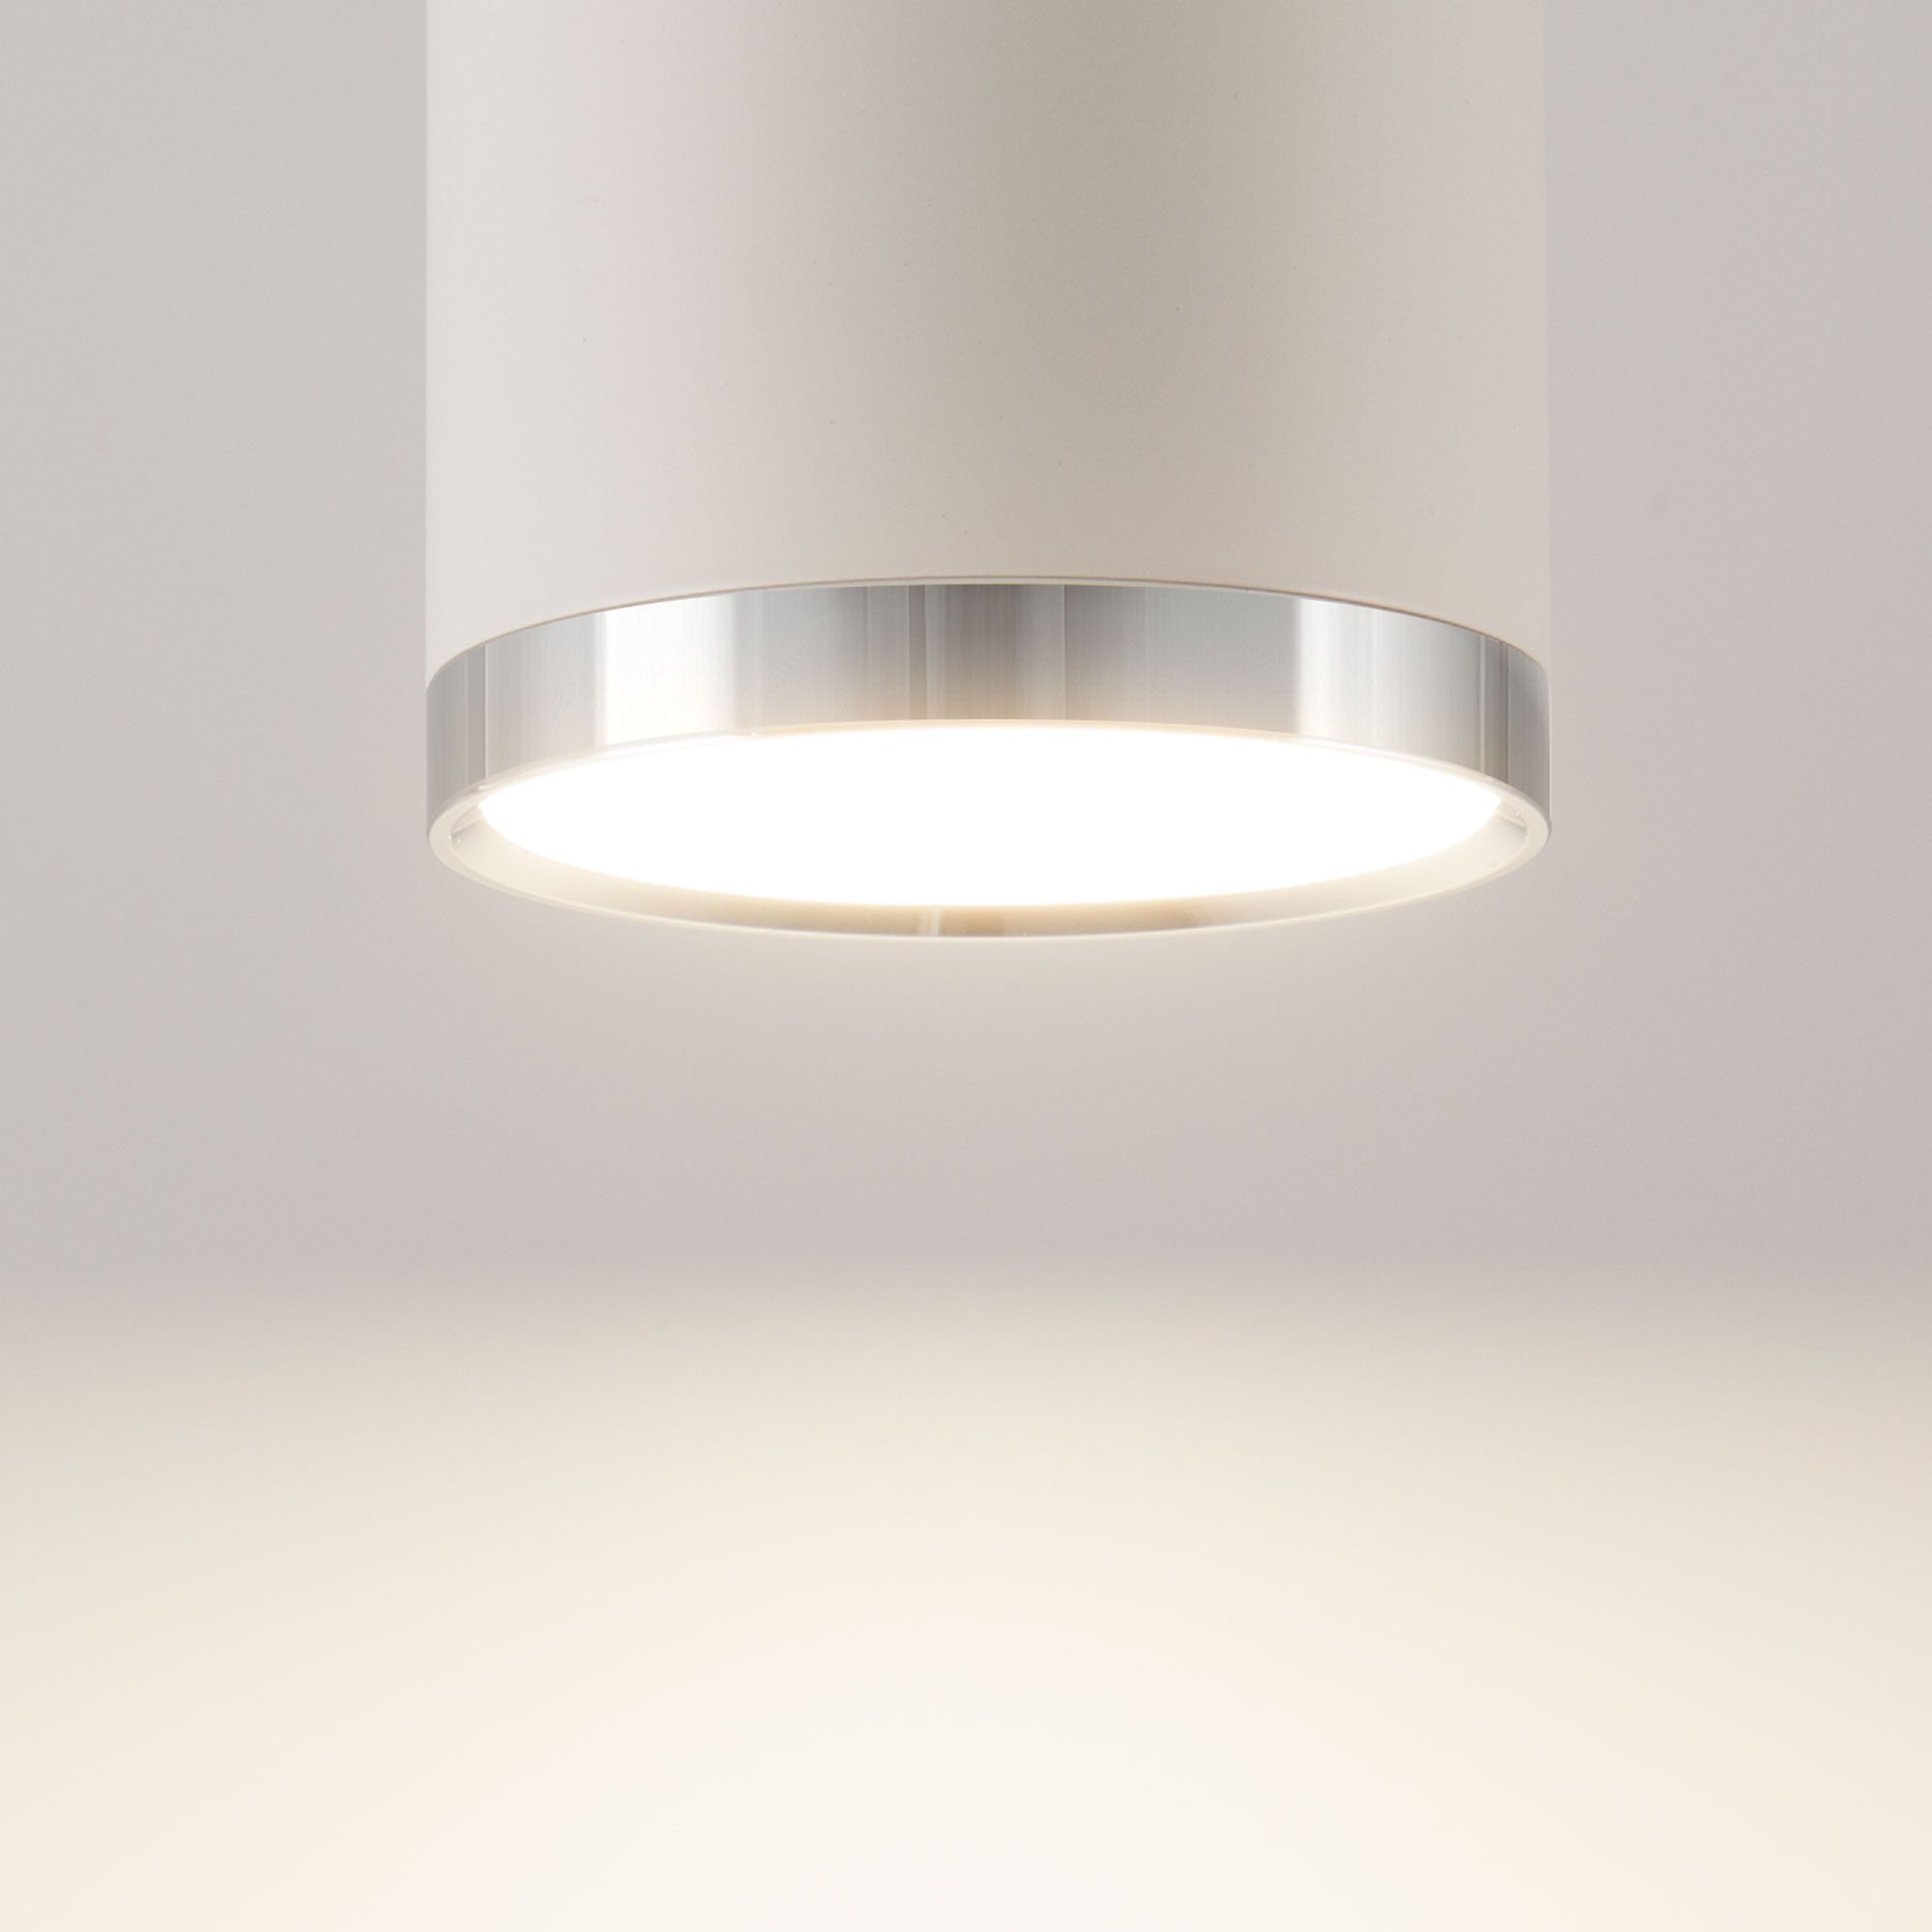 Накладной светодиодный светильник DLR024 6W 4200K белый матовый. Фото 2